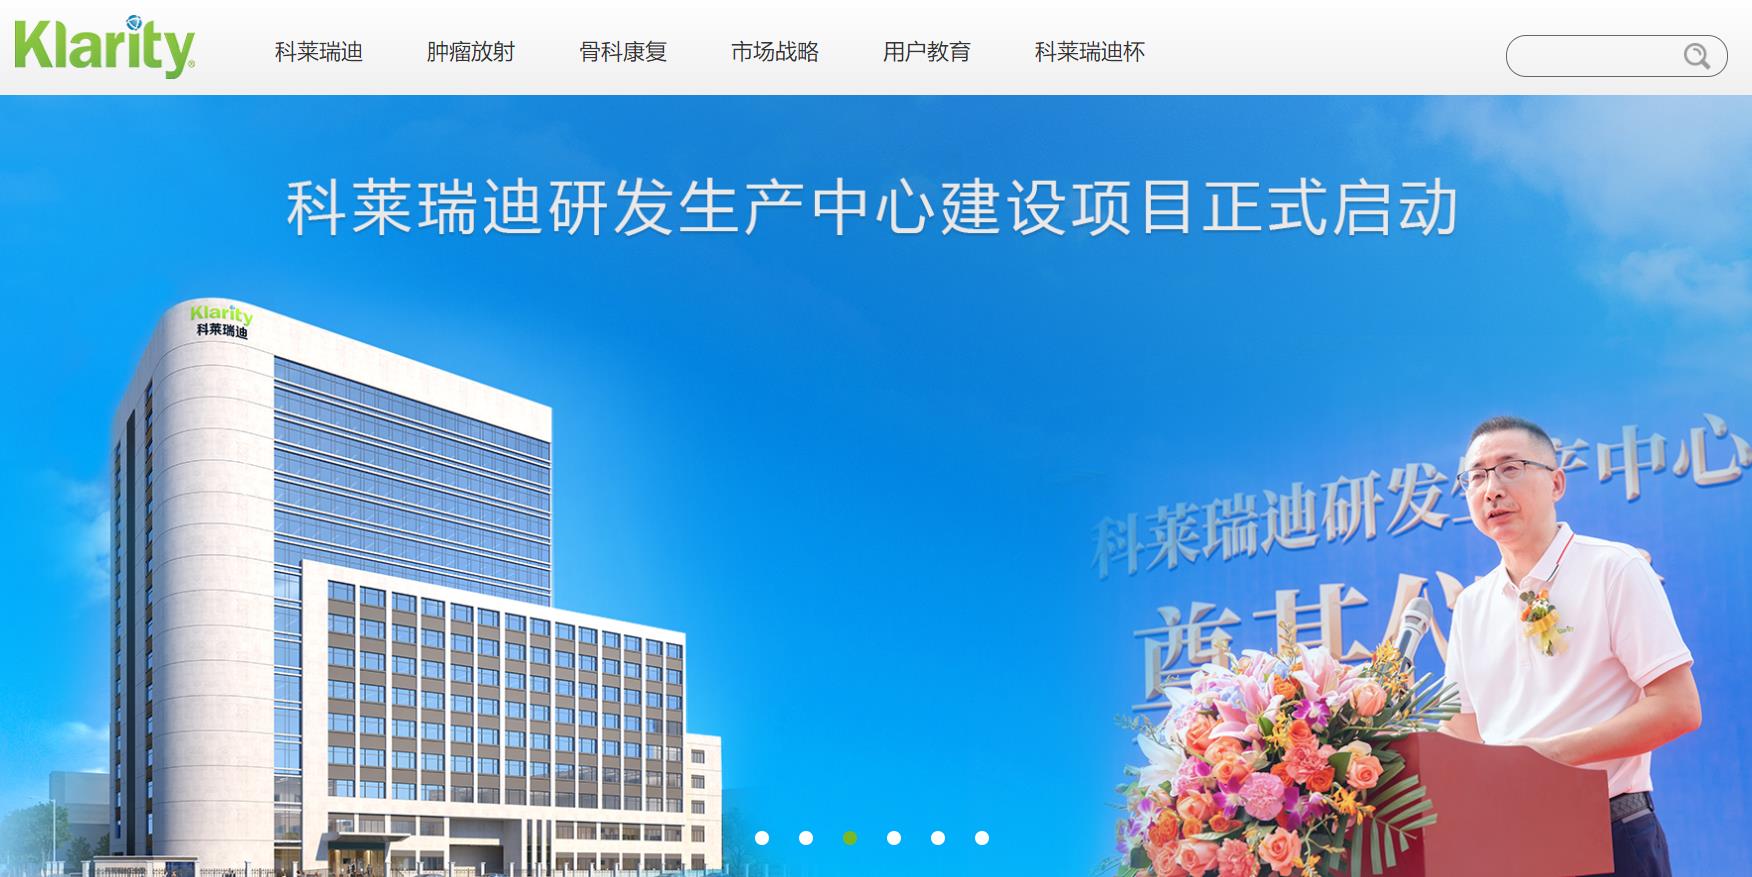 广州科莱瑞迪研发中心建设项目总投资 5362.09万元